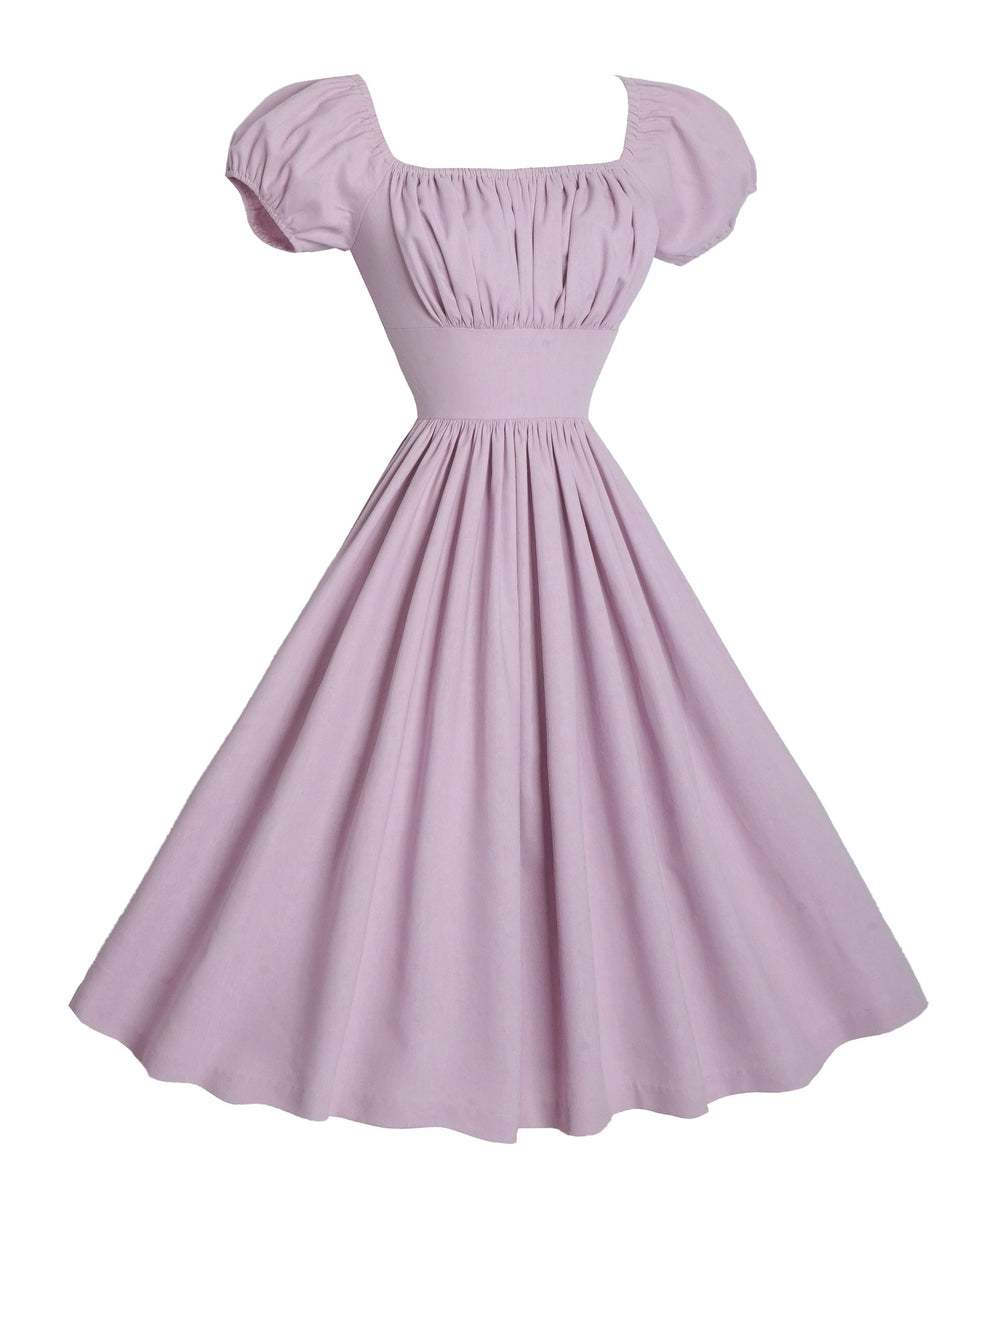 MTO - Loretta Dress in Lilac Purple Linen